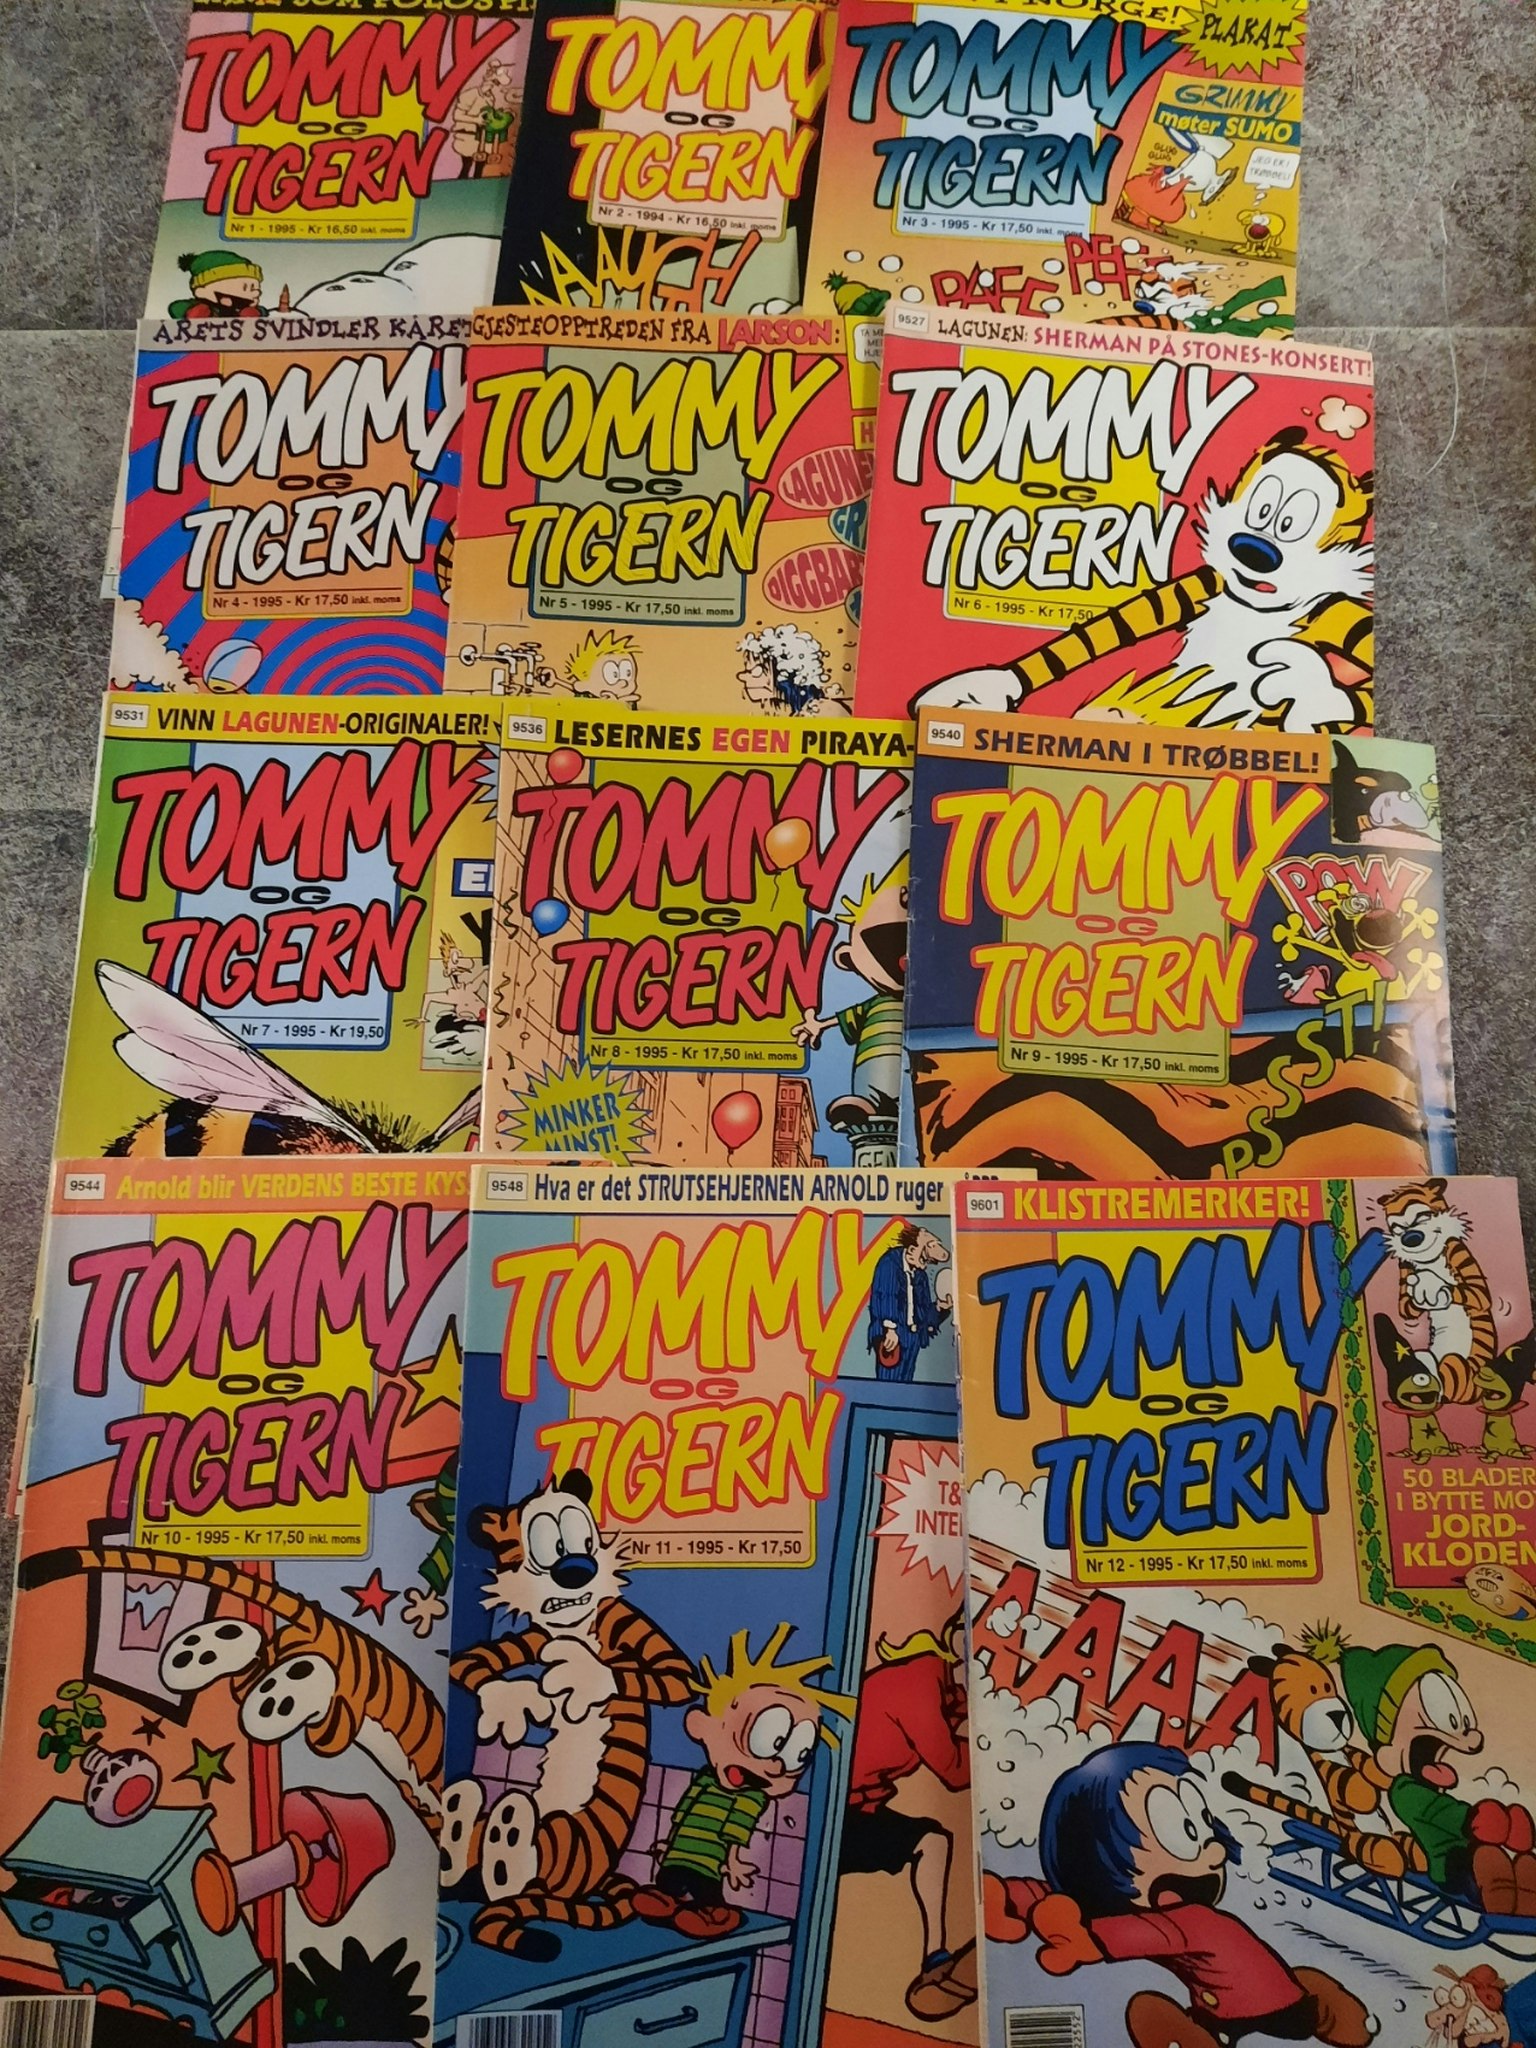 Tommy og Tigern  1995 årgang komplett (lesepakke)